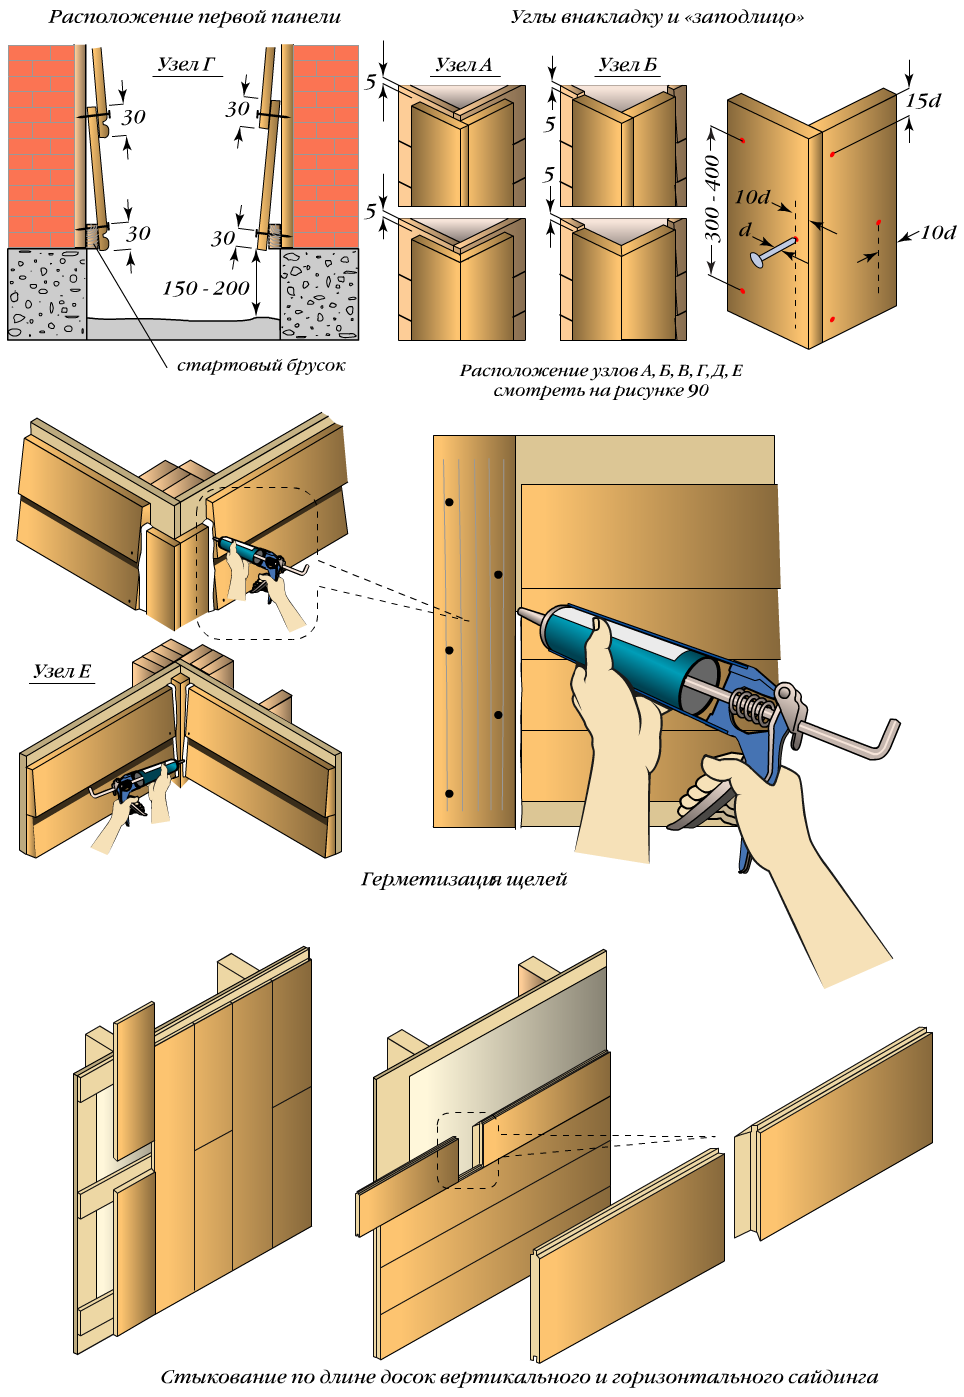 Подробная схема монтажа деревянного блок хауса